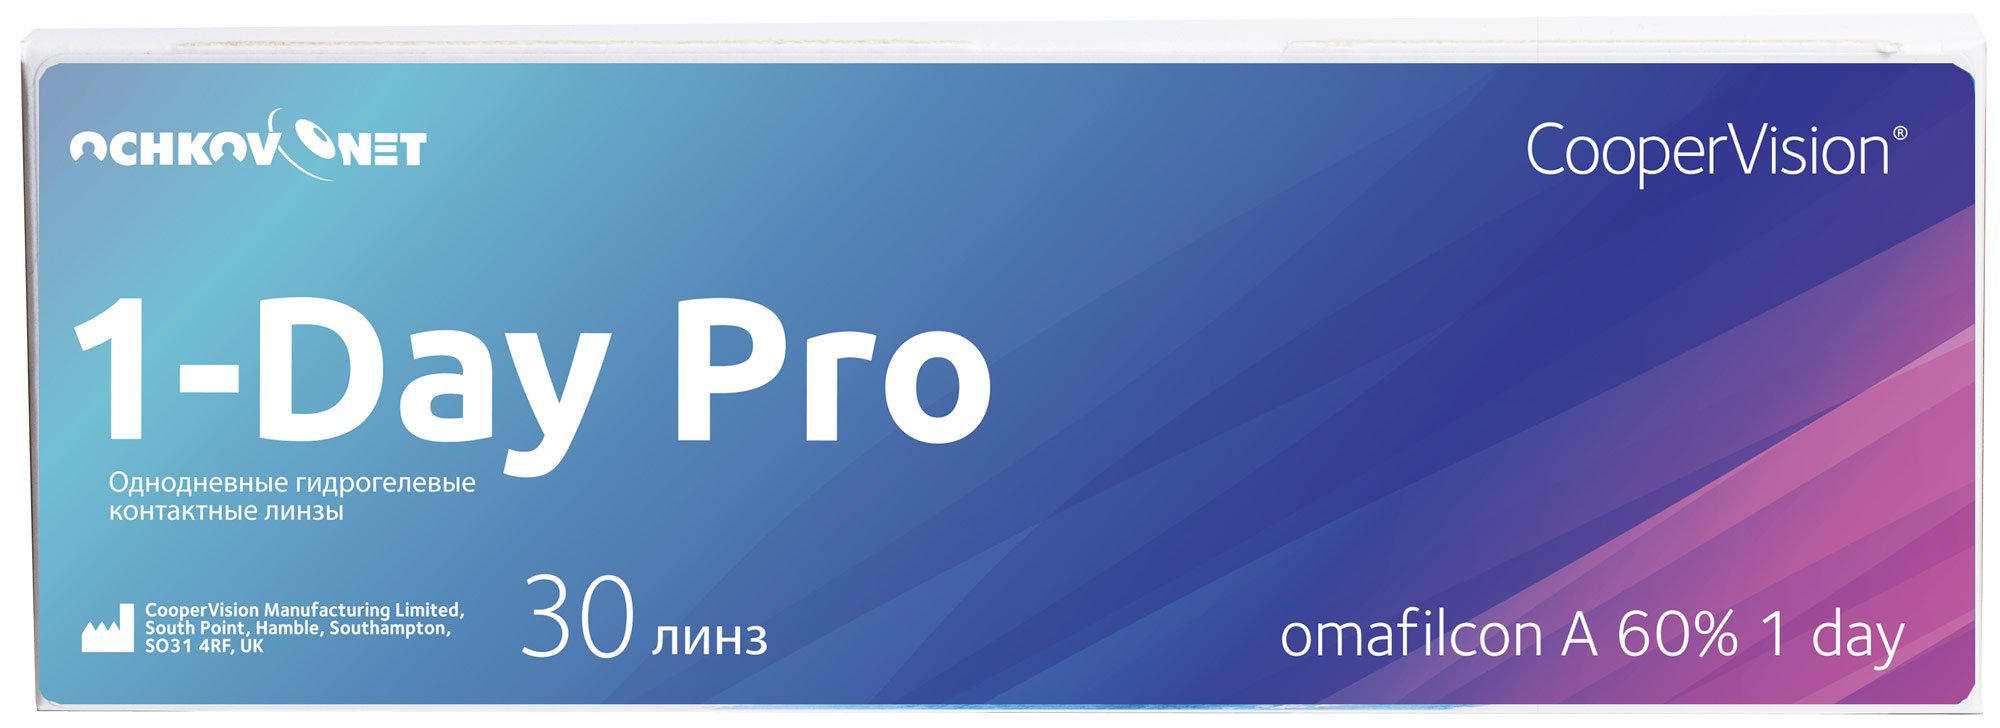 Купить Контактные линзы Ochkov.Net 1-Day Pro 30 линз 8.7, -3